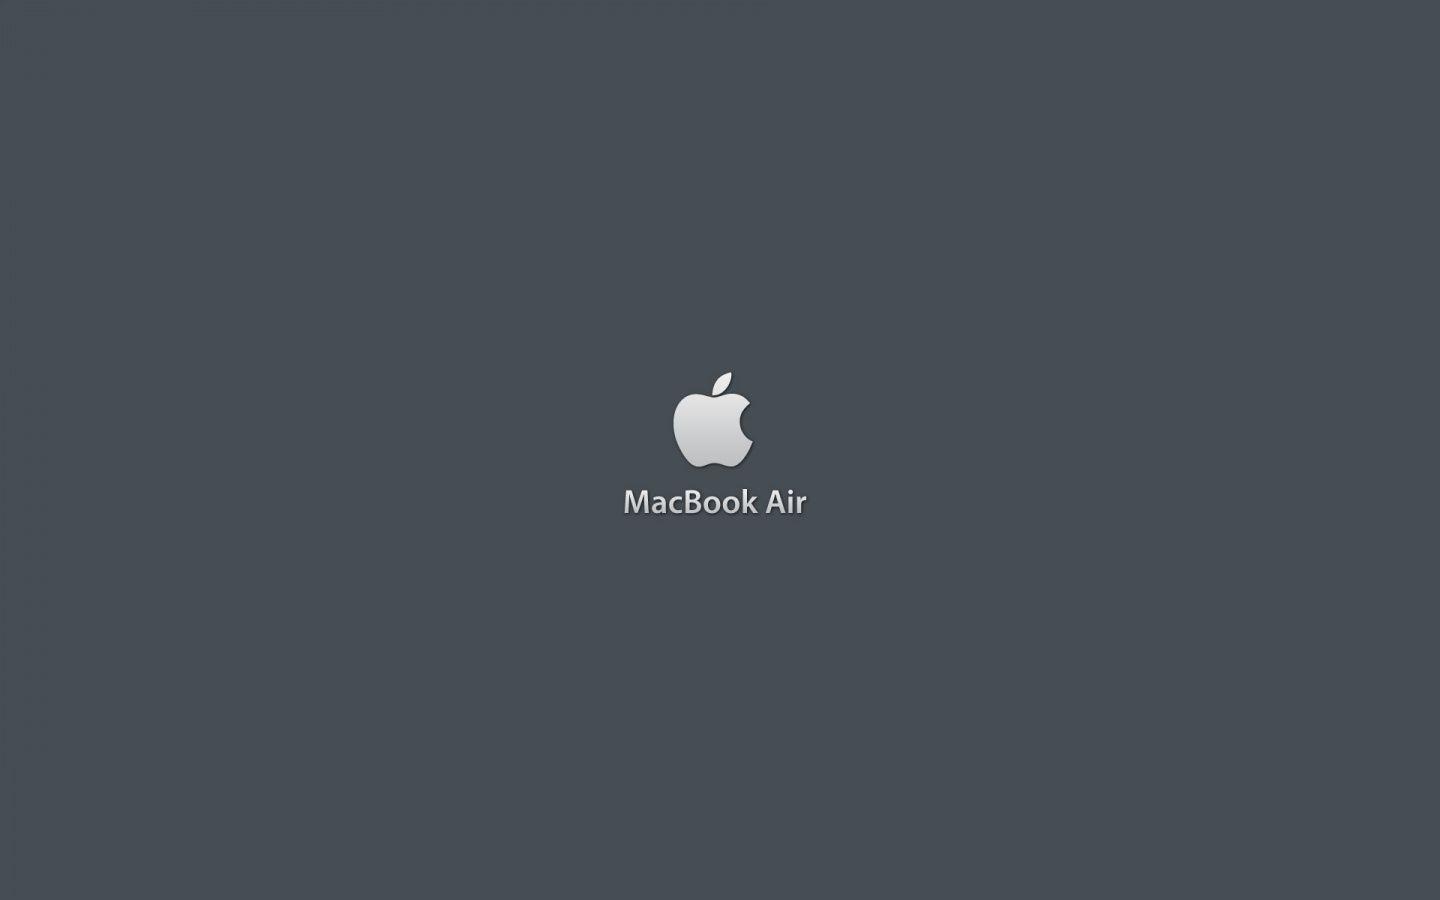 Macbook Air Logo Wallpaper